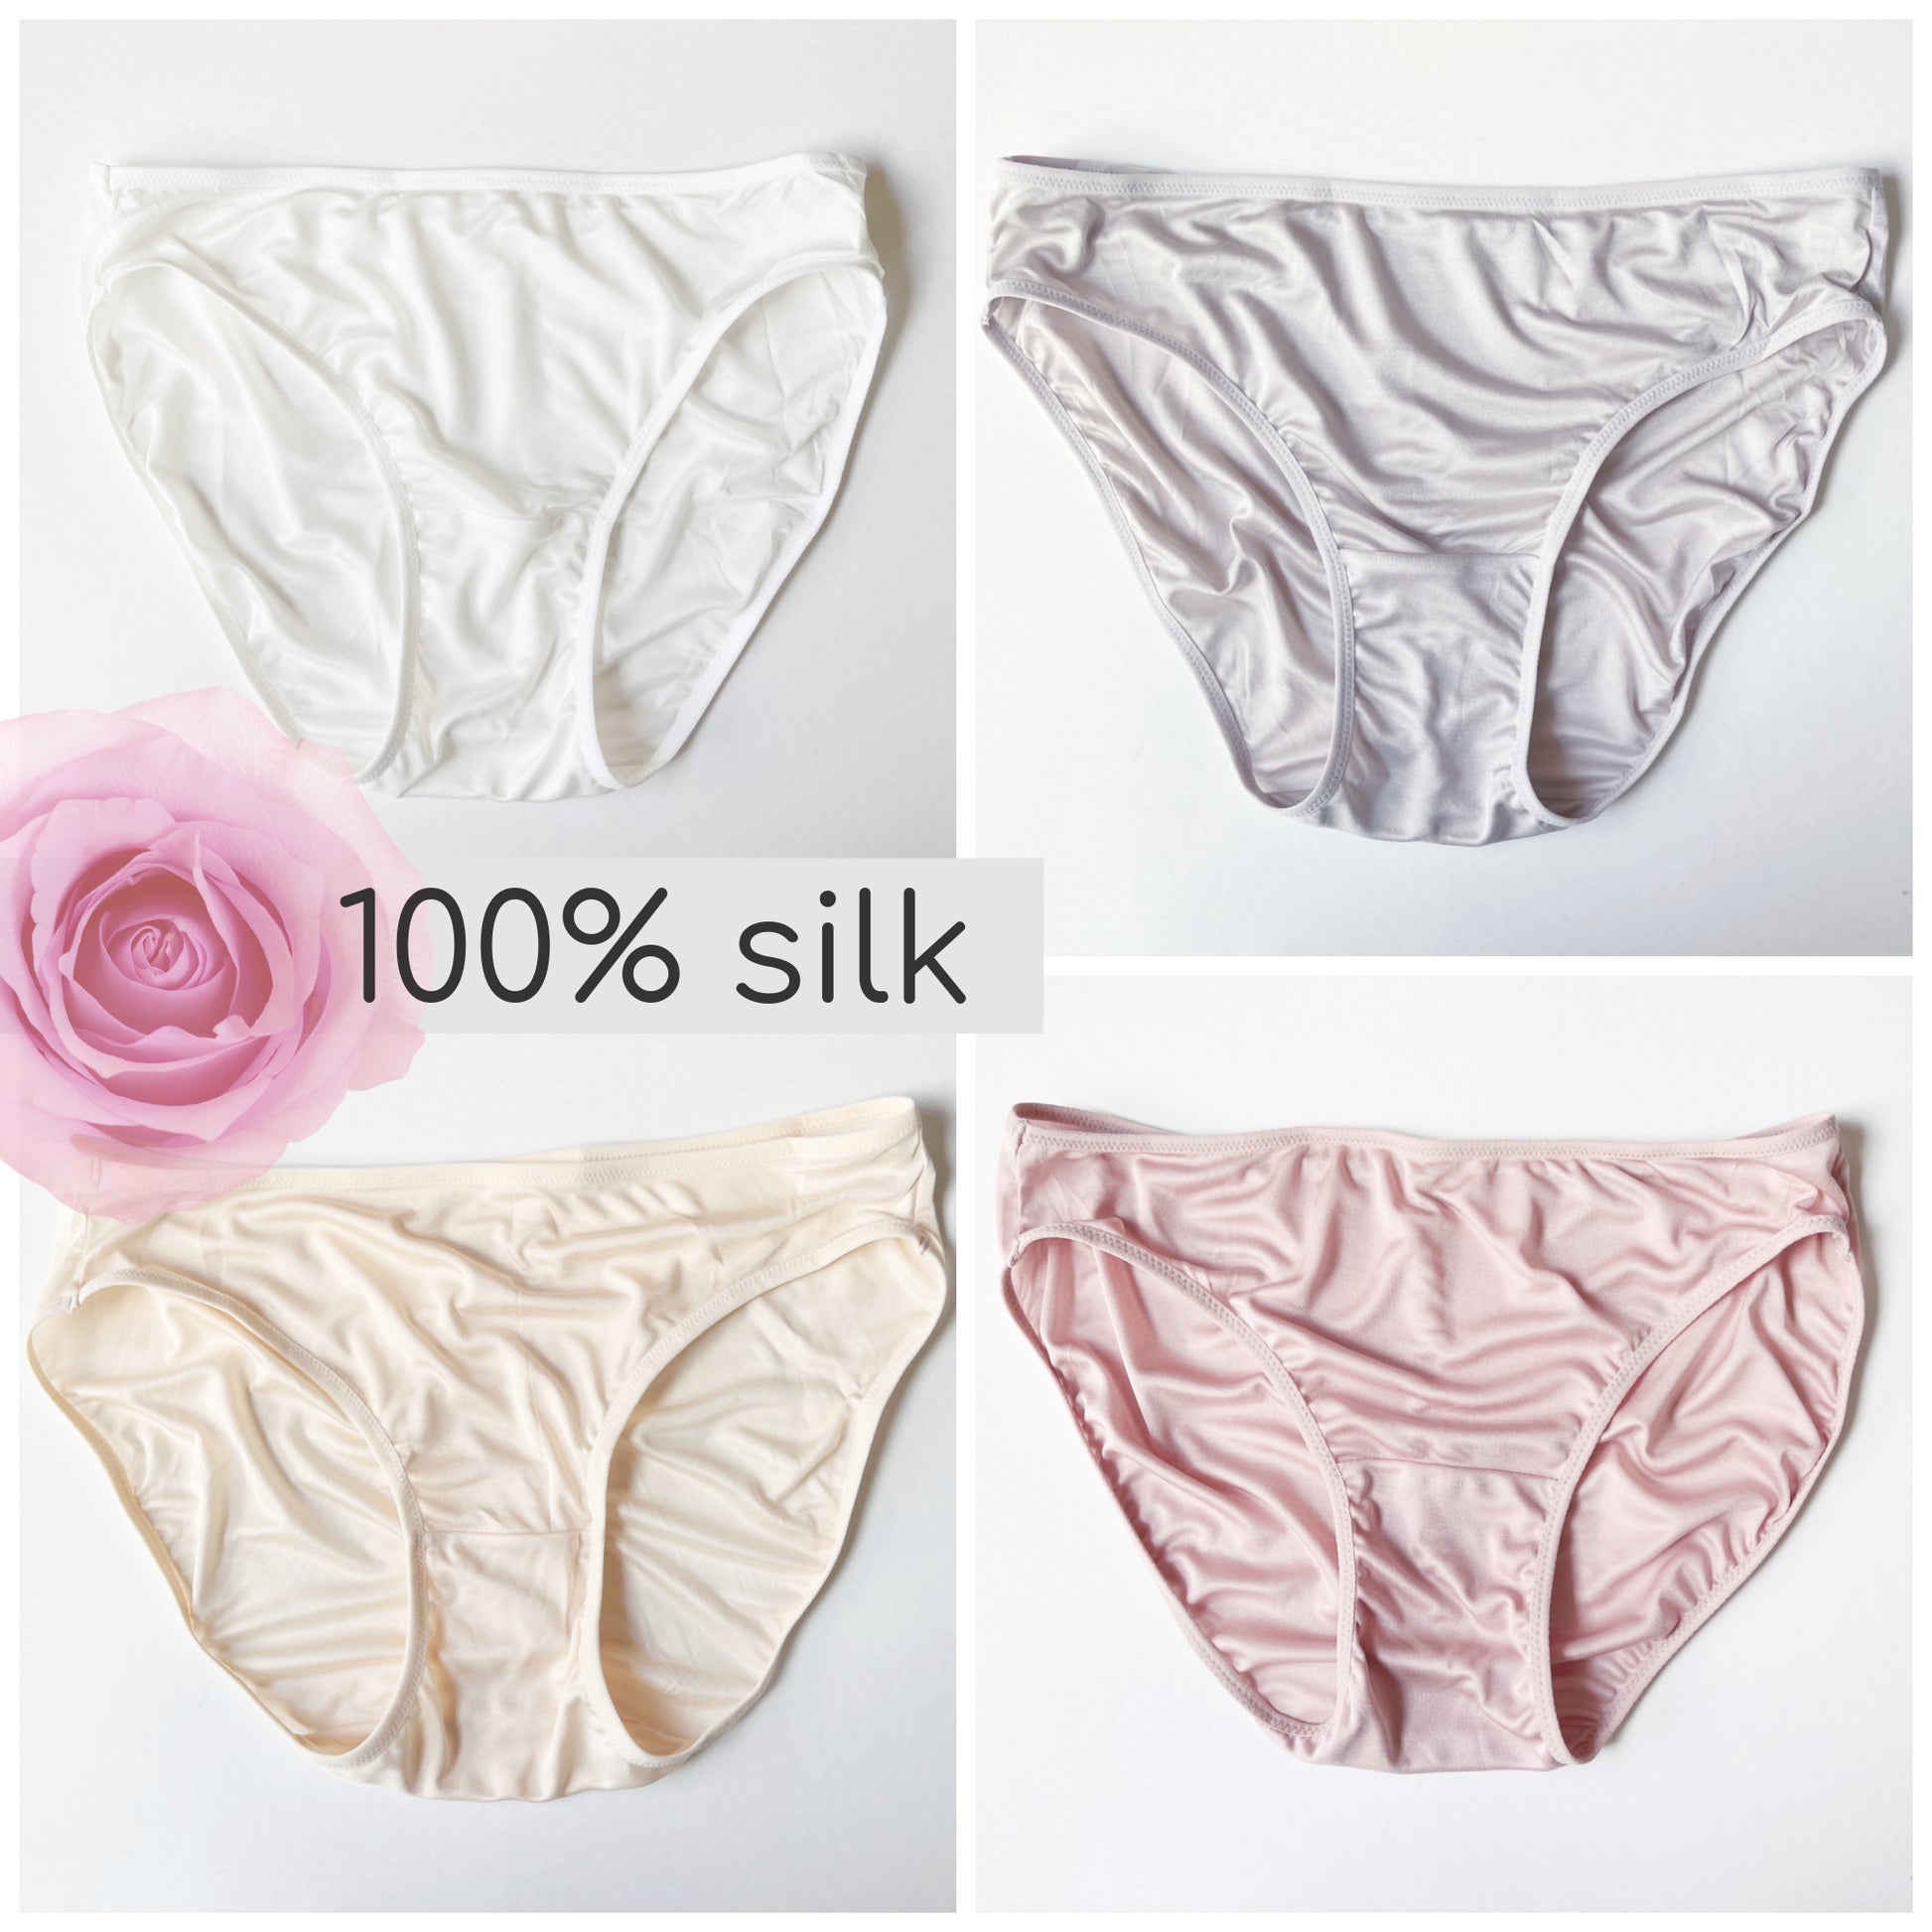 According to the underwear girls genuine 4 100% cotton briefs